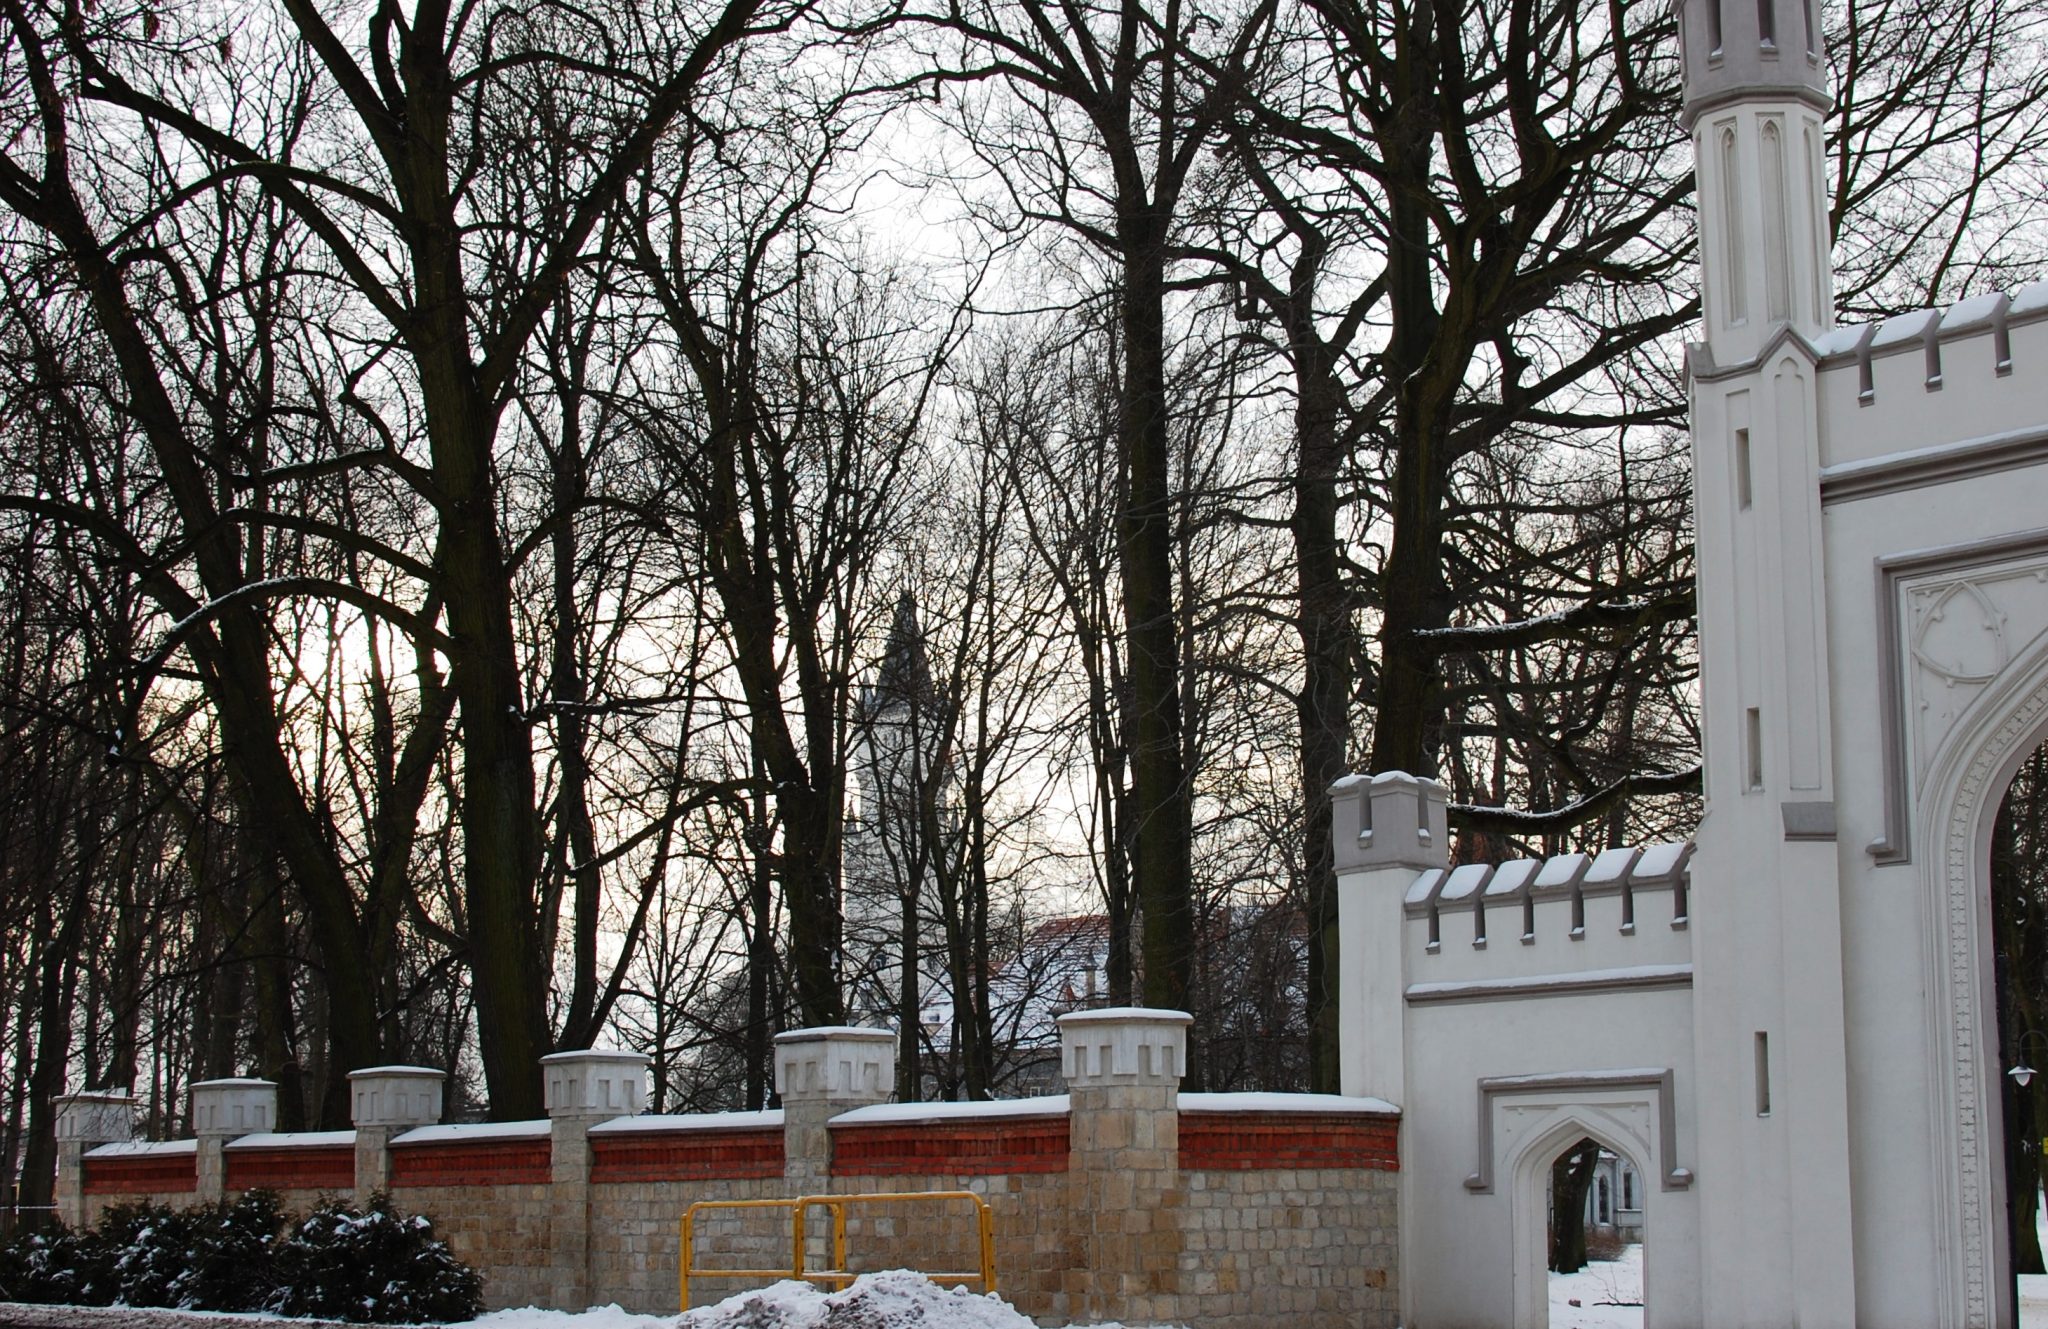 Ogrodzenie kamienne z ozdobną bramą wjazdową. W tle widoczne wysokie korony drzew bez liści oraz wysoka wieża.